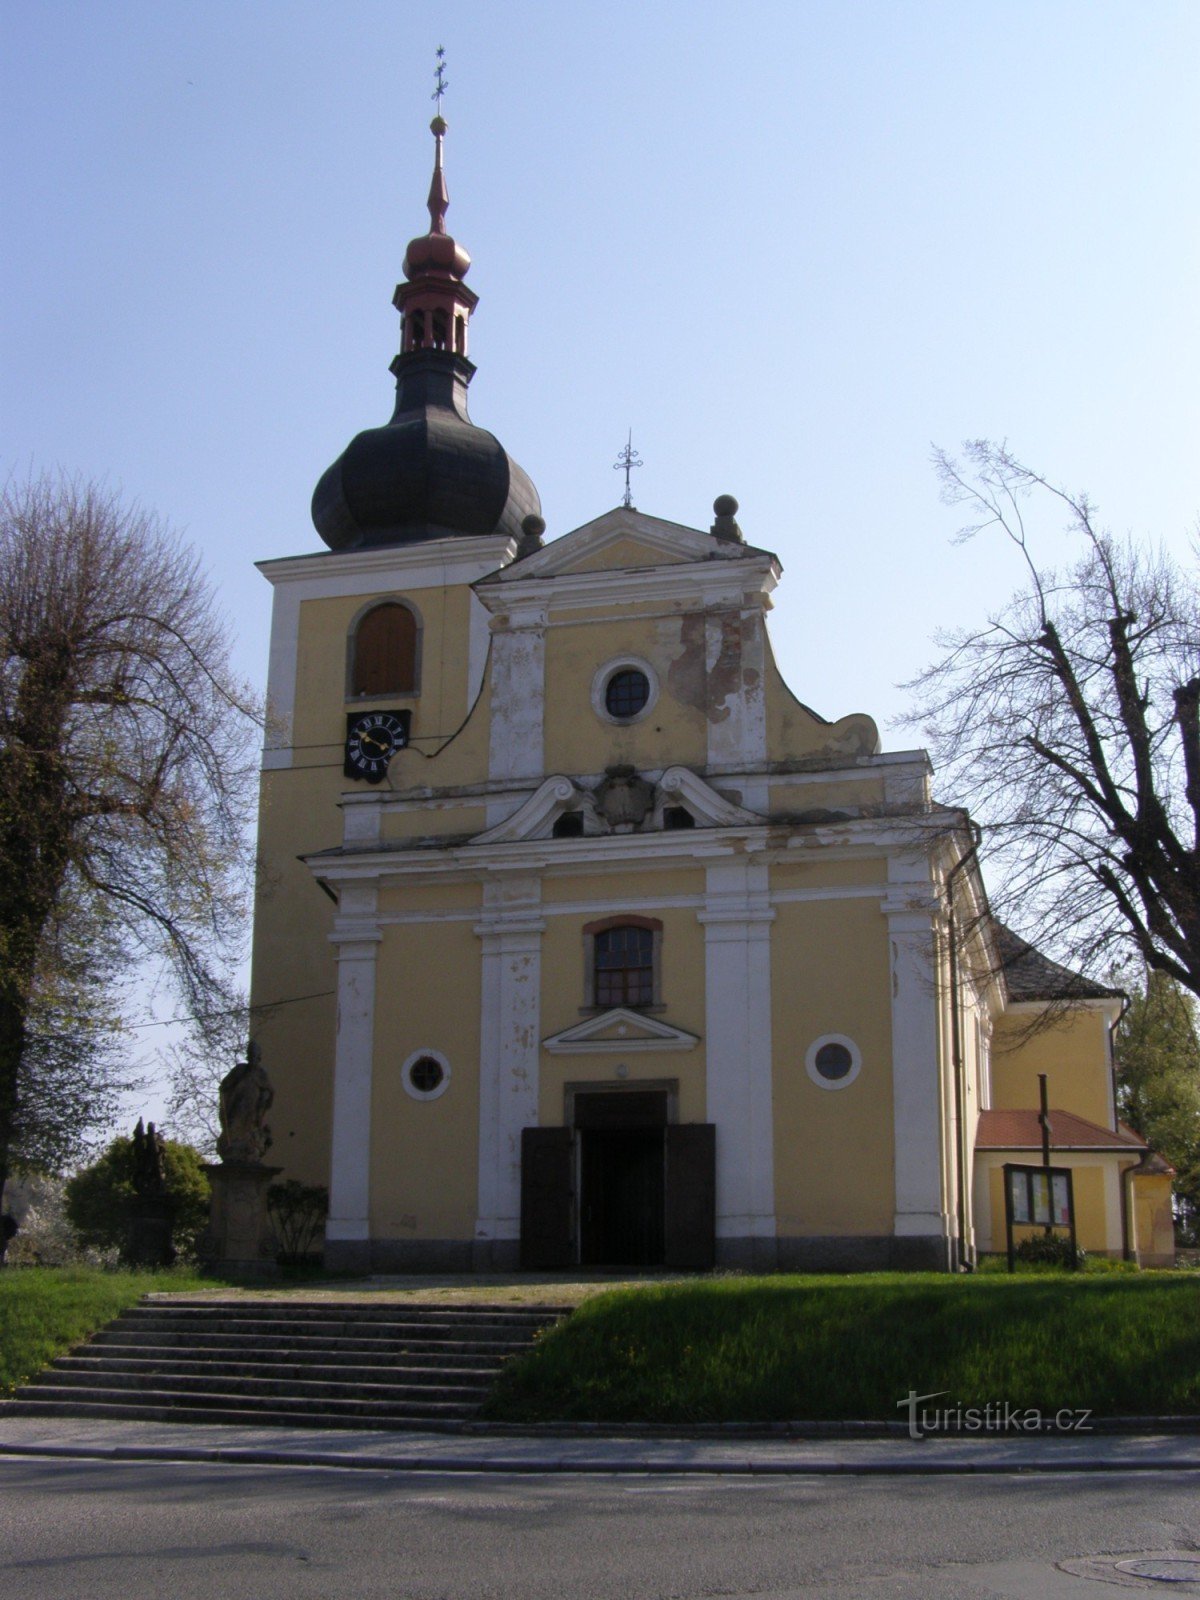 Česká Skalice - Biserica Adormirea Maicii Domnului